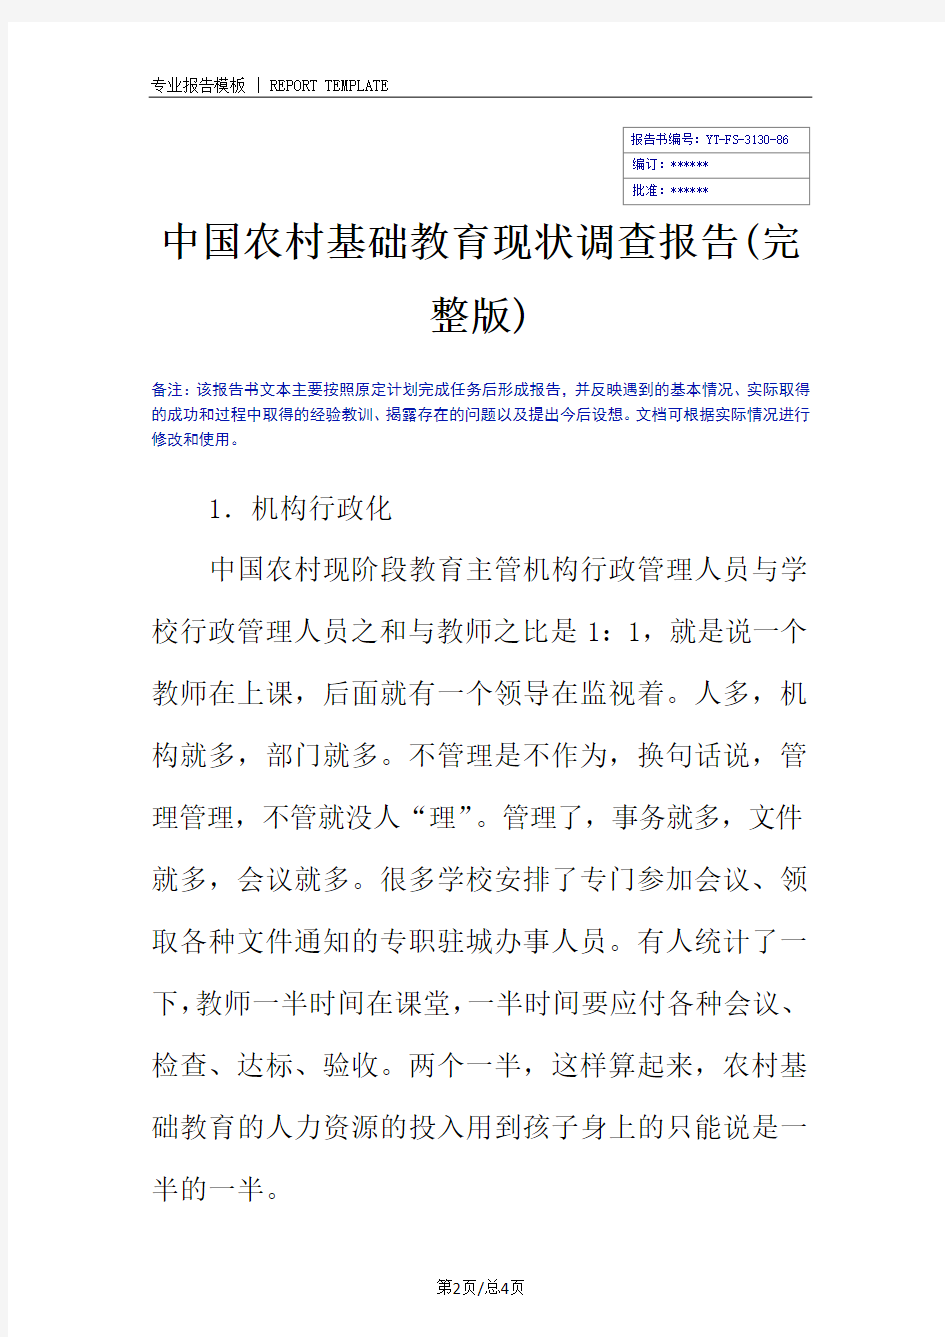 中国农村基础教育现状调查报告(完整版)_1